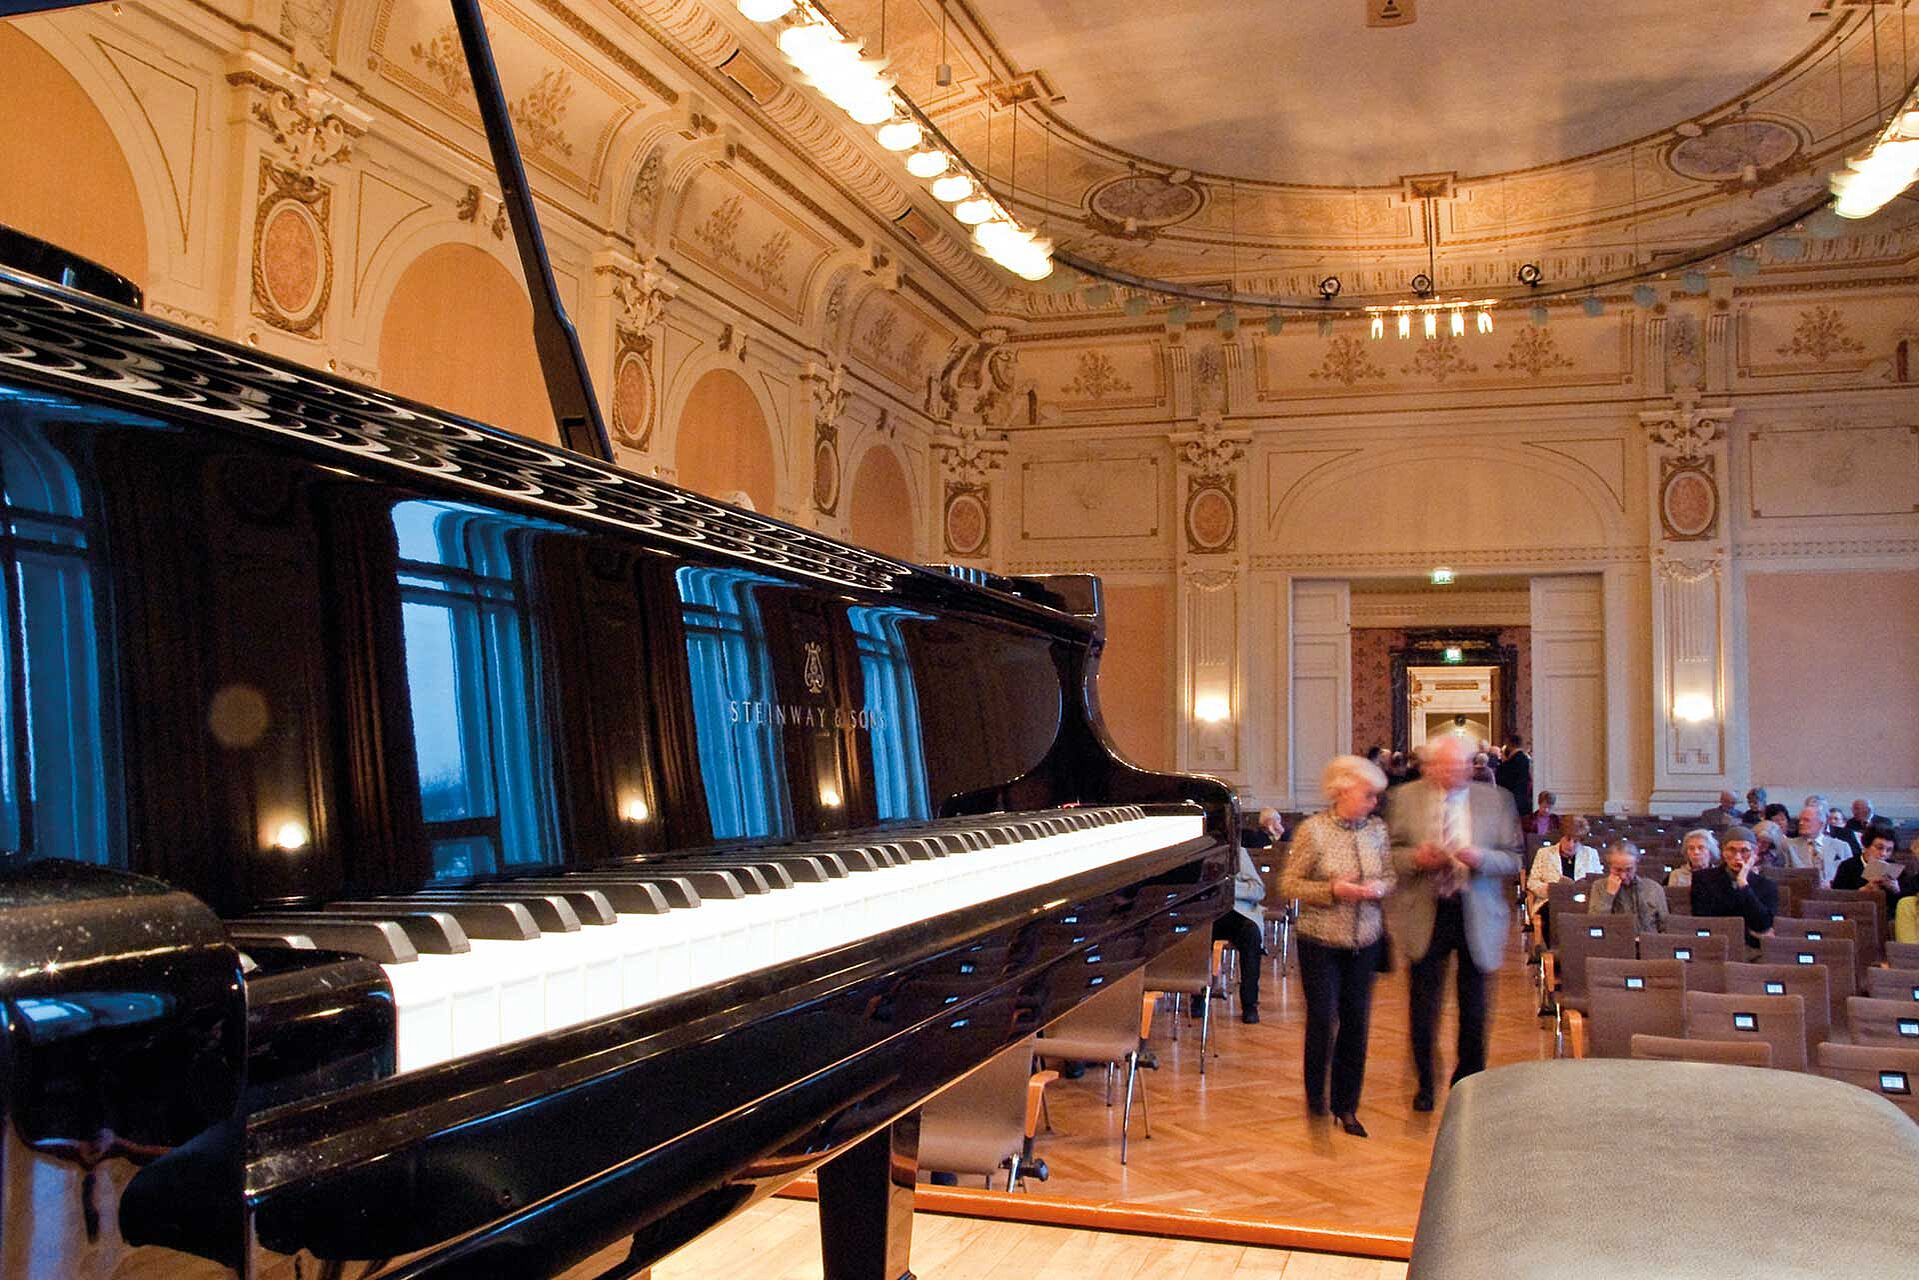 Klavierzyklus Kammerkonzert im Mendelssohn Saal in der Historischen Stadthalle Wuppertal